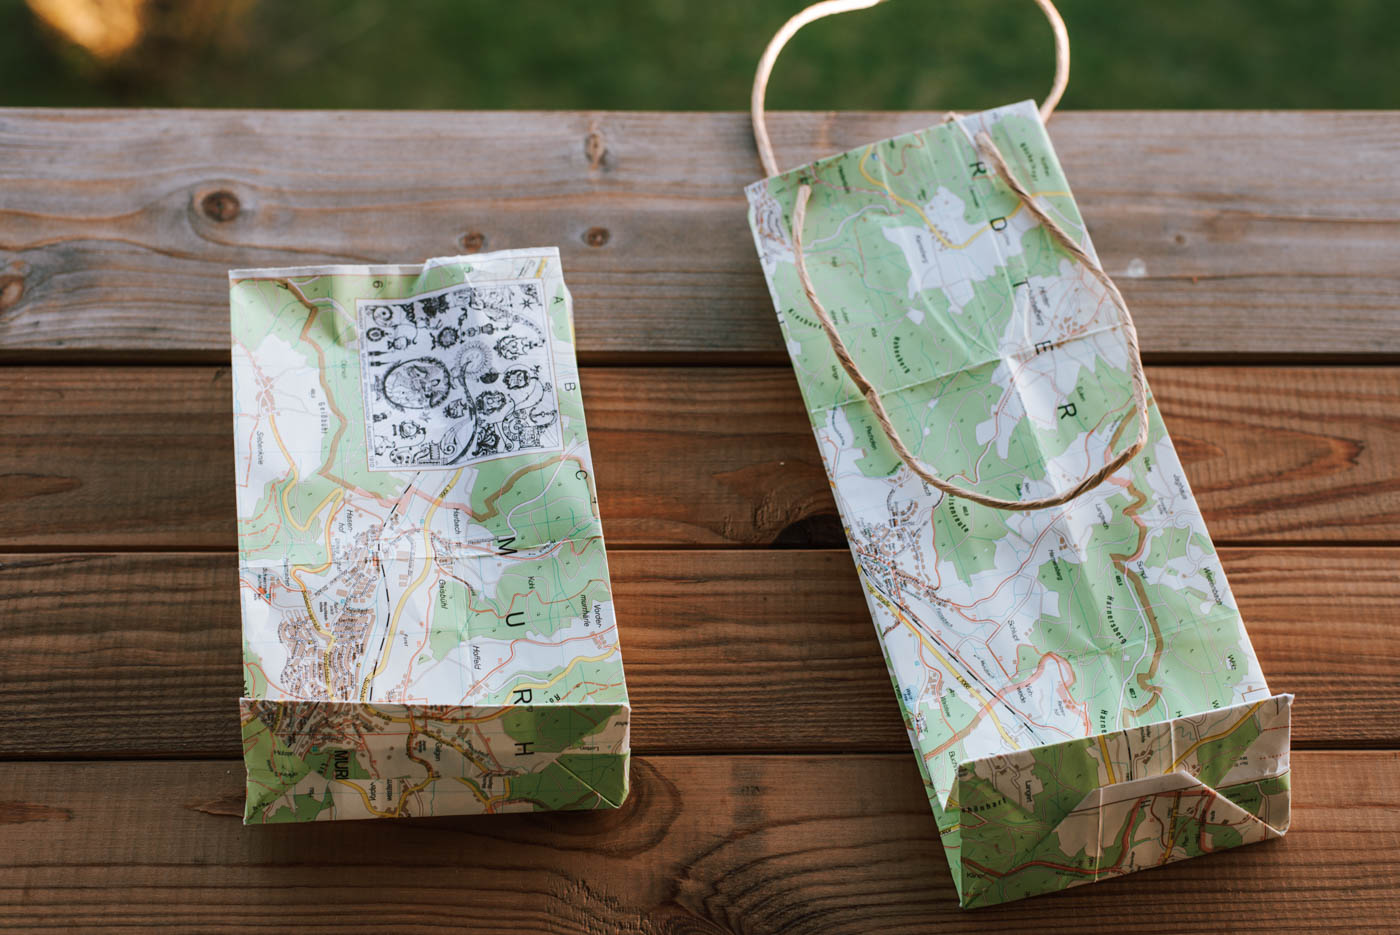 Upcycling DIY Geschenkverpackung aus alten Landkarten selber machen: Geschenktüten falten & füllen, Geschenke in Karten einwickeln. So geht's